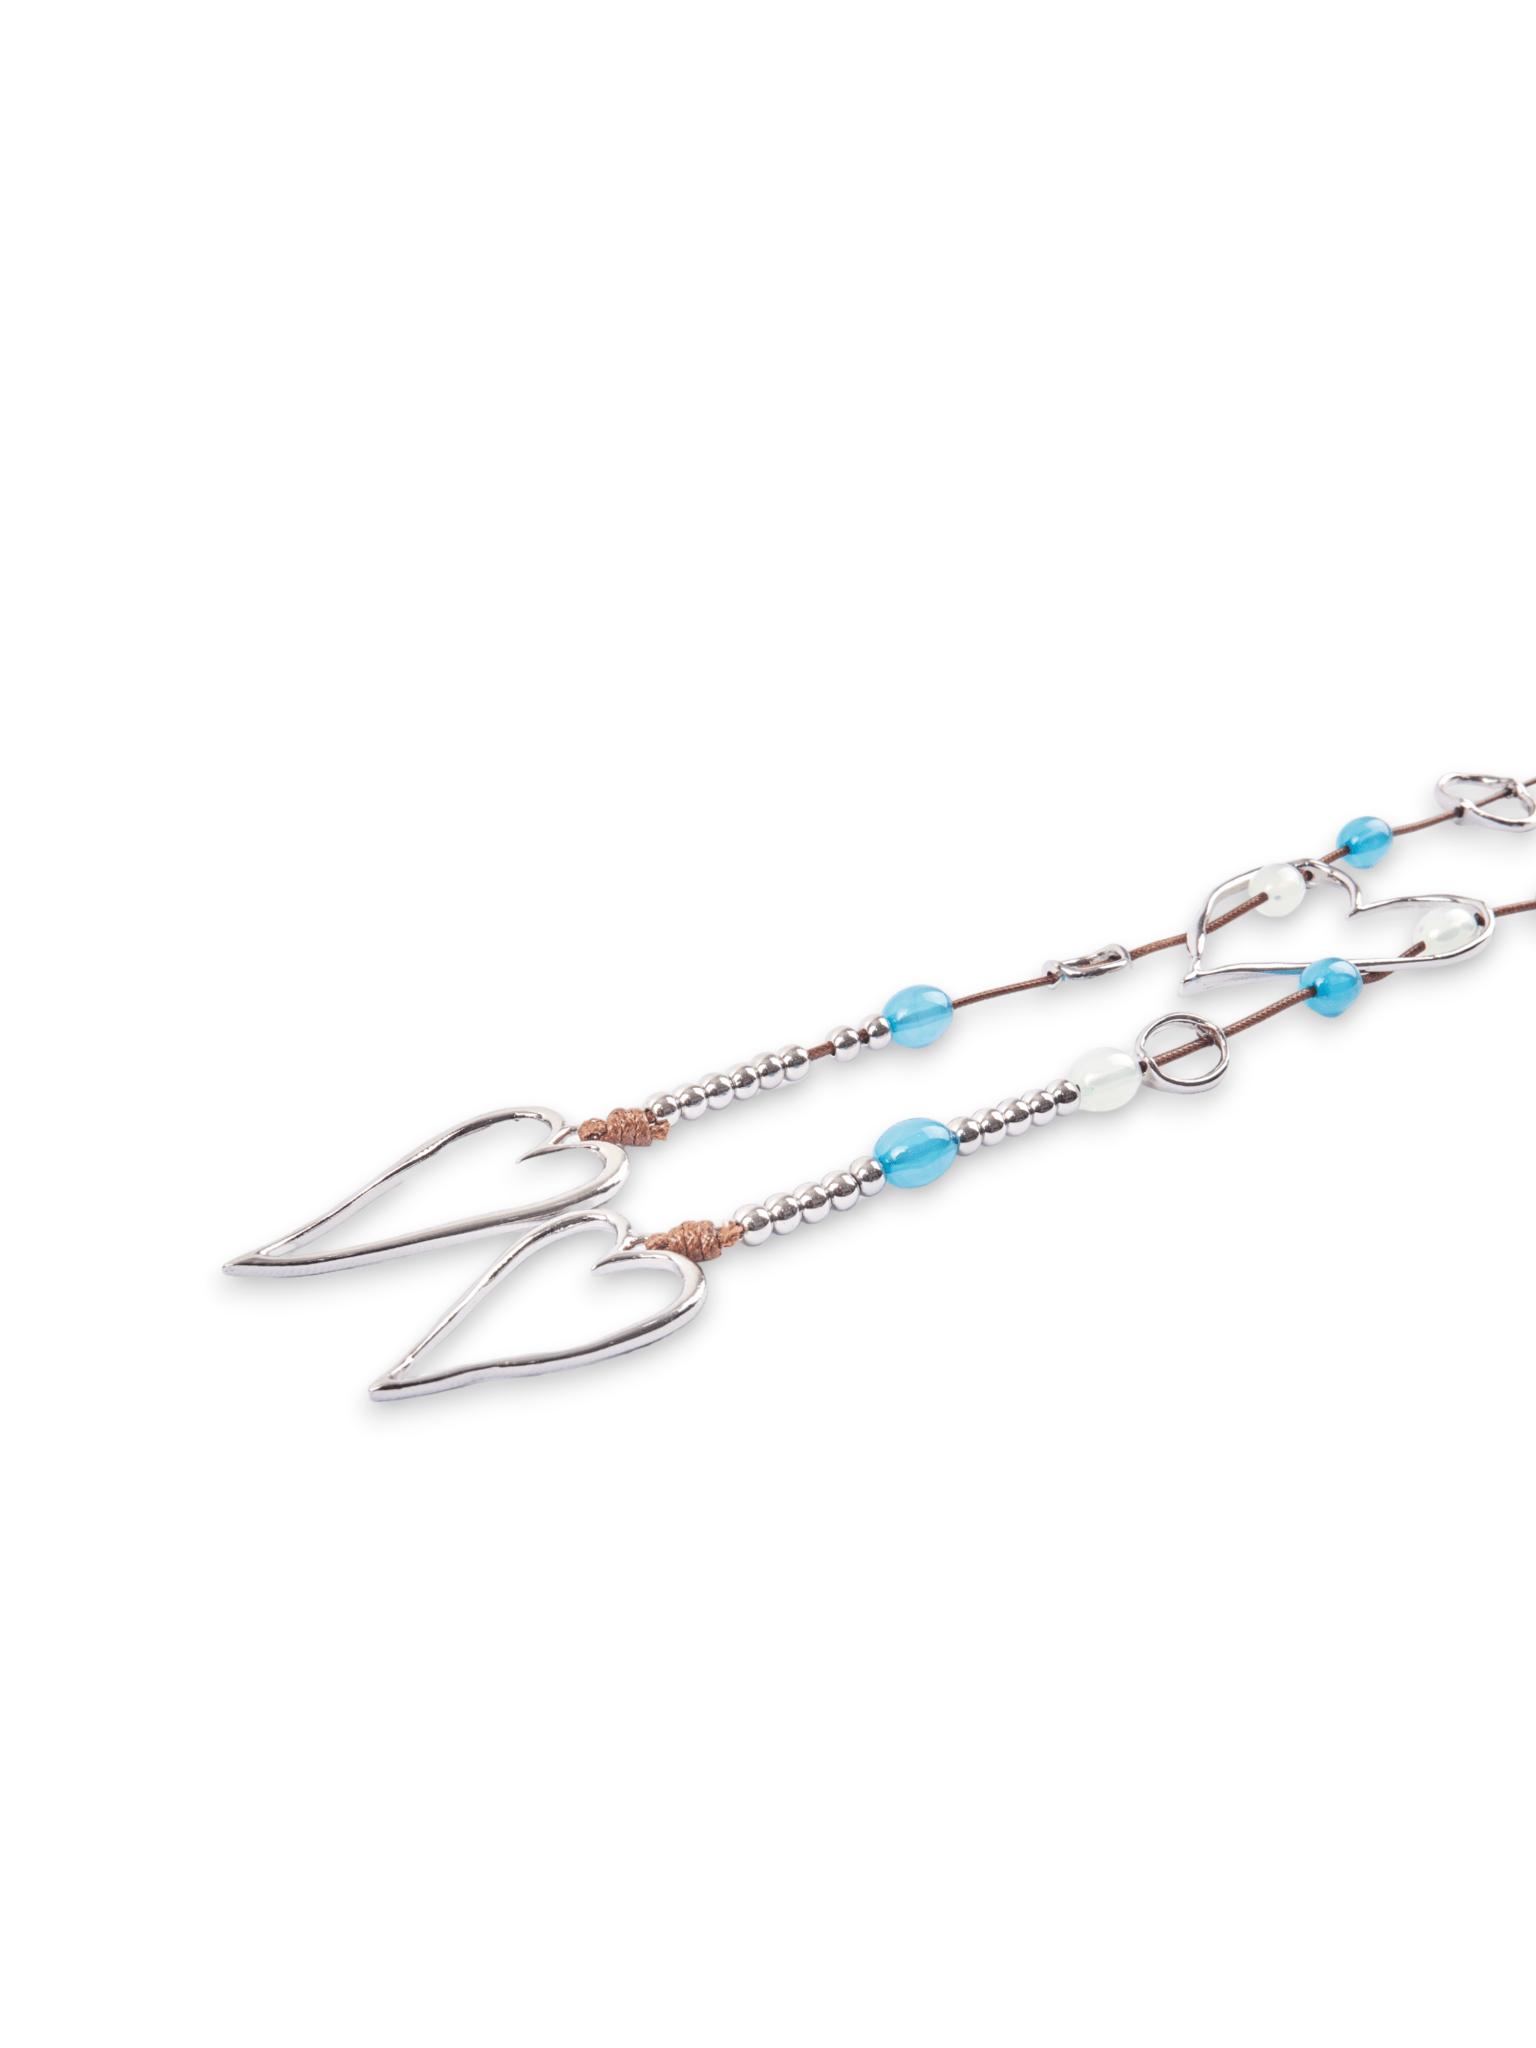 collana-laccio-pendente-cuore-metallo-argento-pietre-acrilico-azzurre-2Mya Accessories